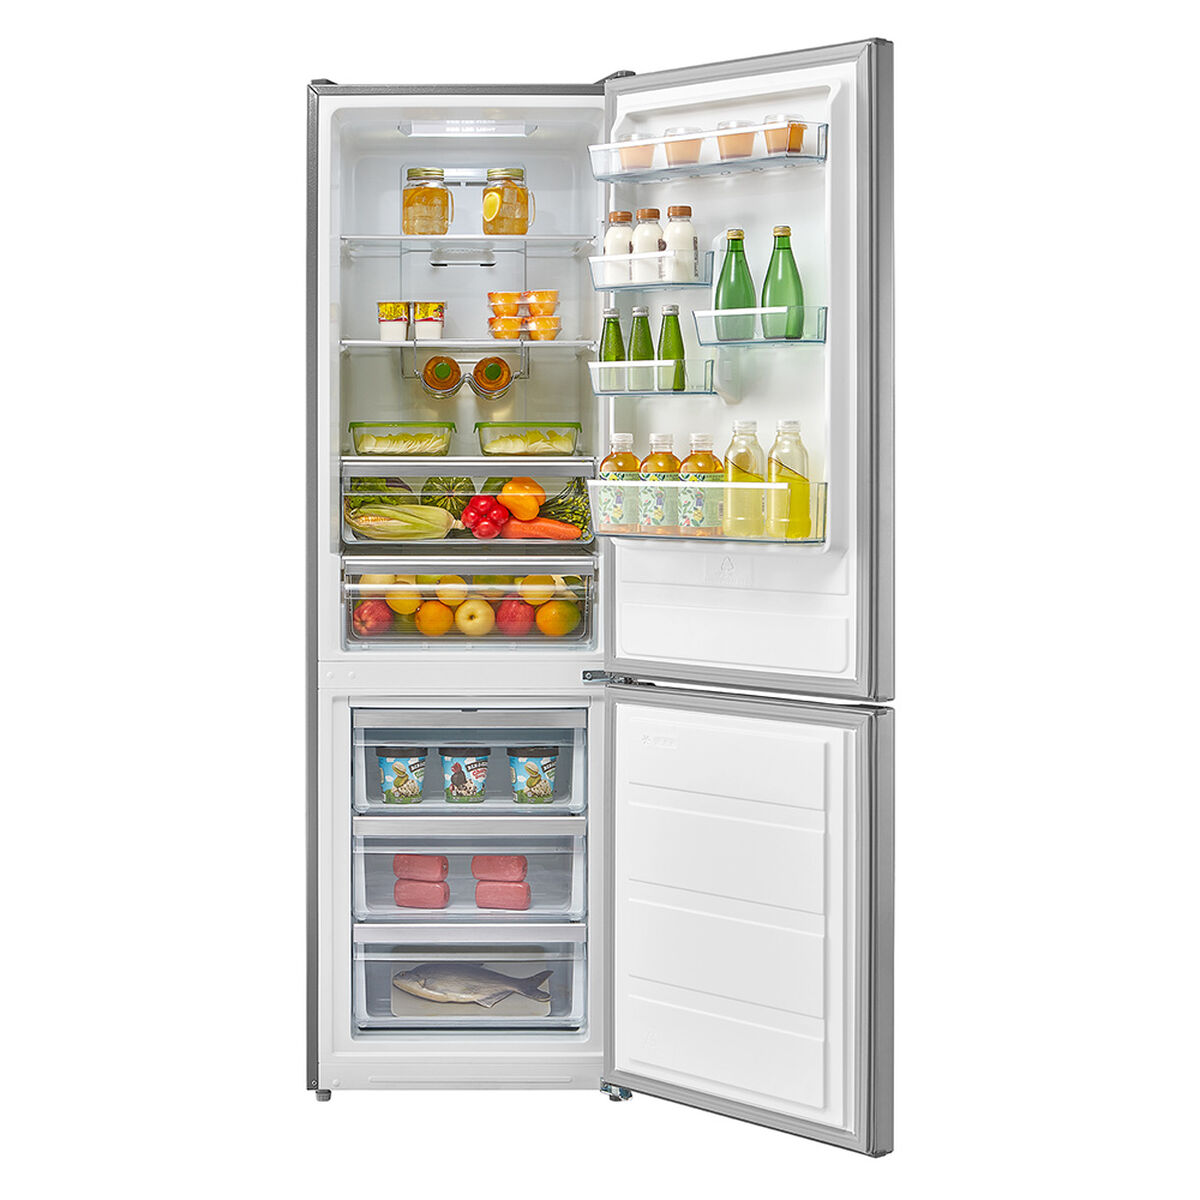 Refrigerador No Frost Midea MRFI-3000 295lts